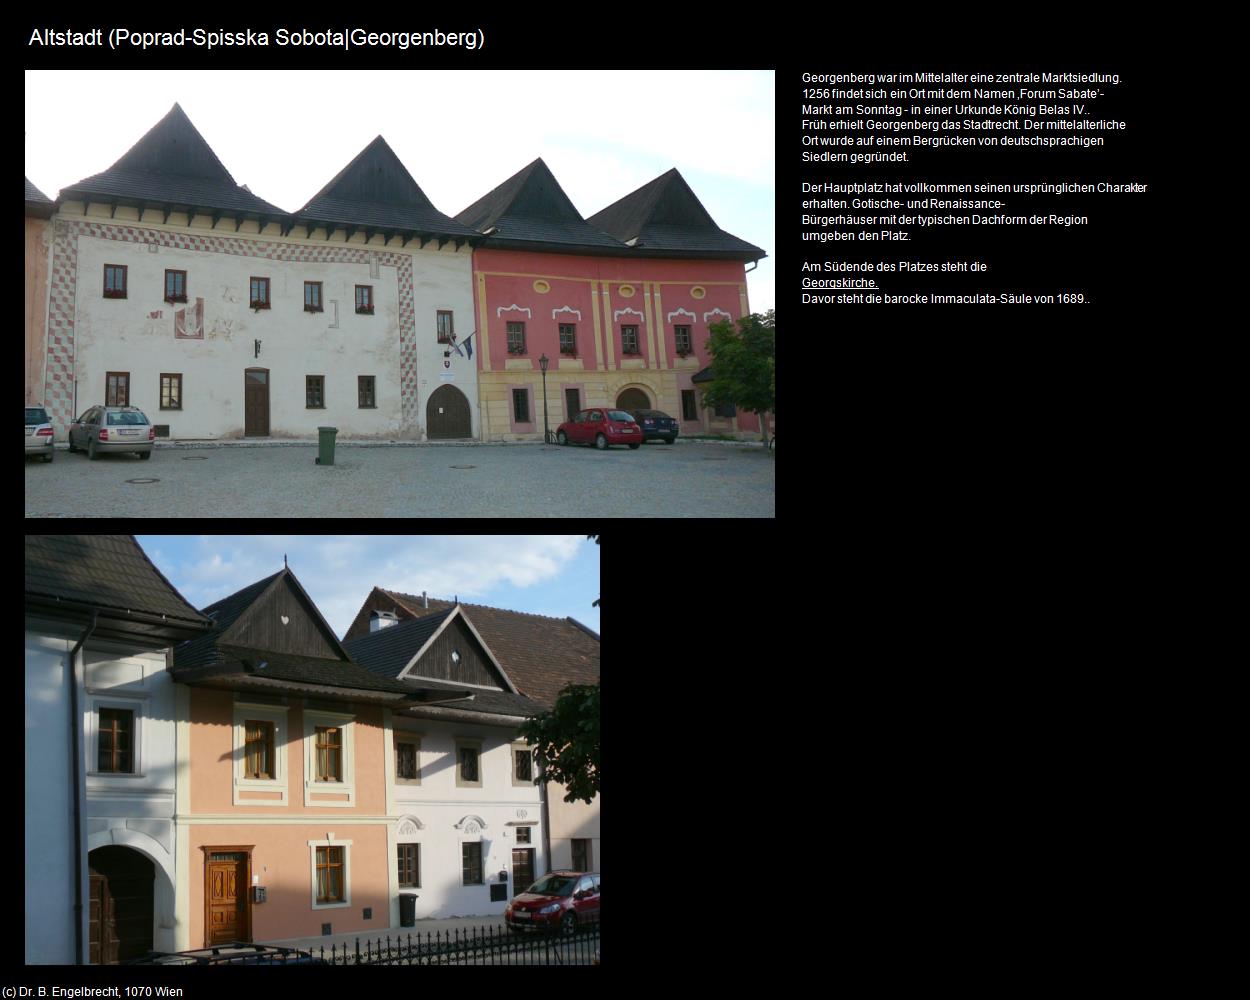 Altstadt (Spisska Sobota|Georgenberg) (Poprad|Deutschendorf) in SLOWAKEI(c)B.Engelbrecht